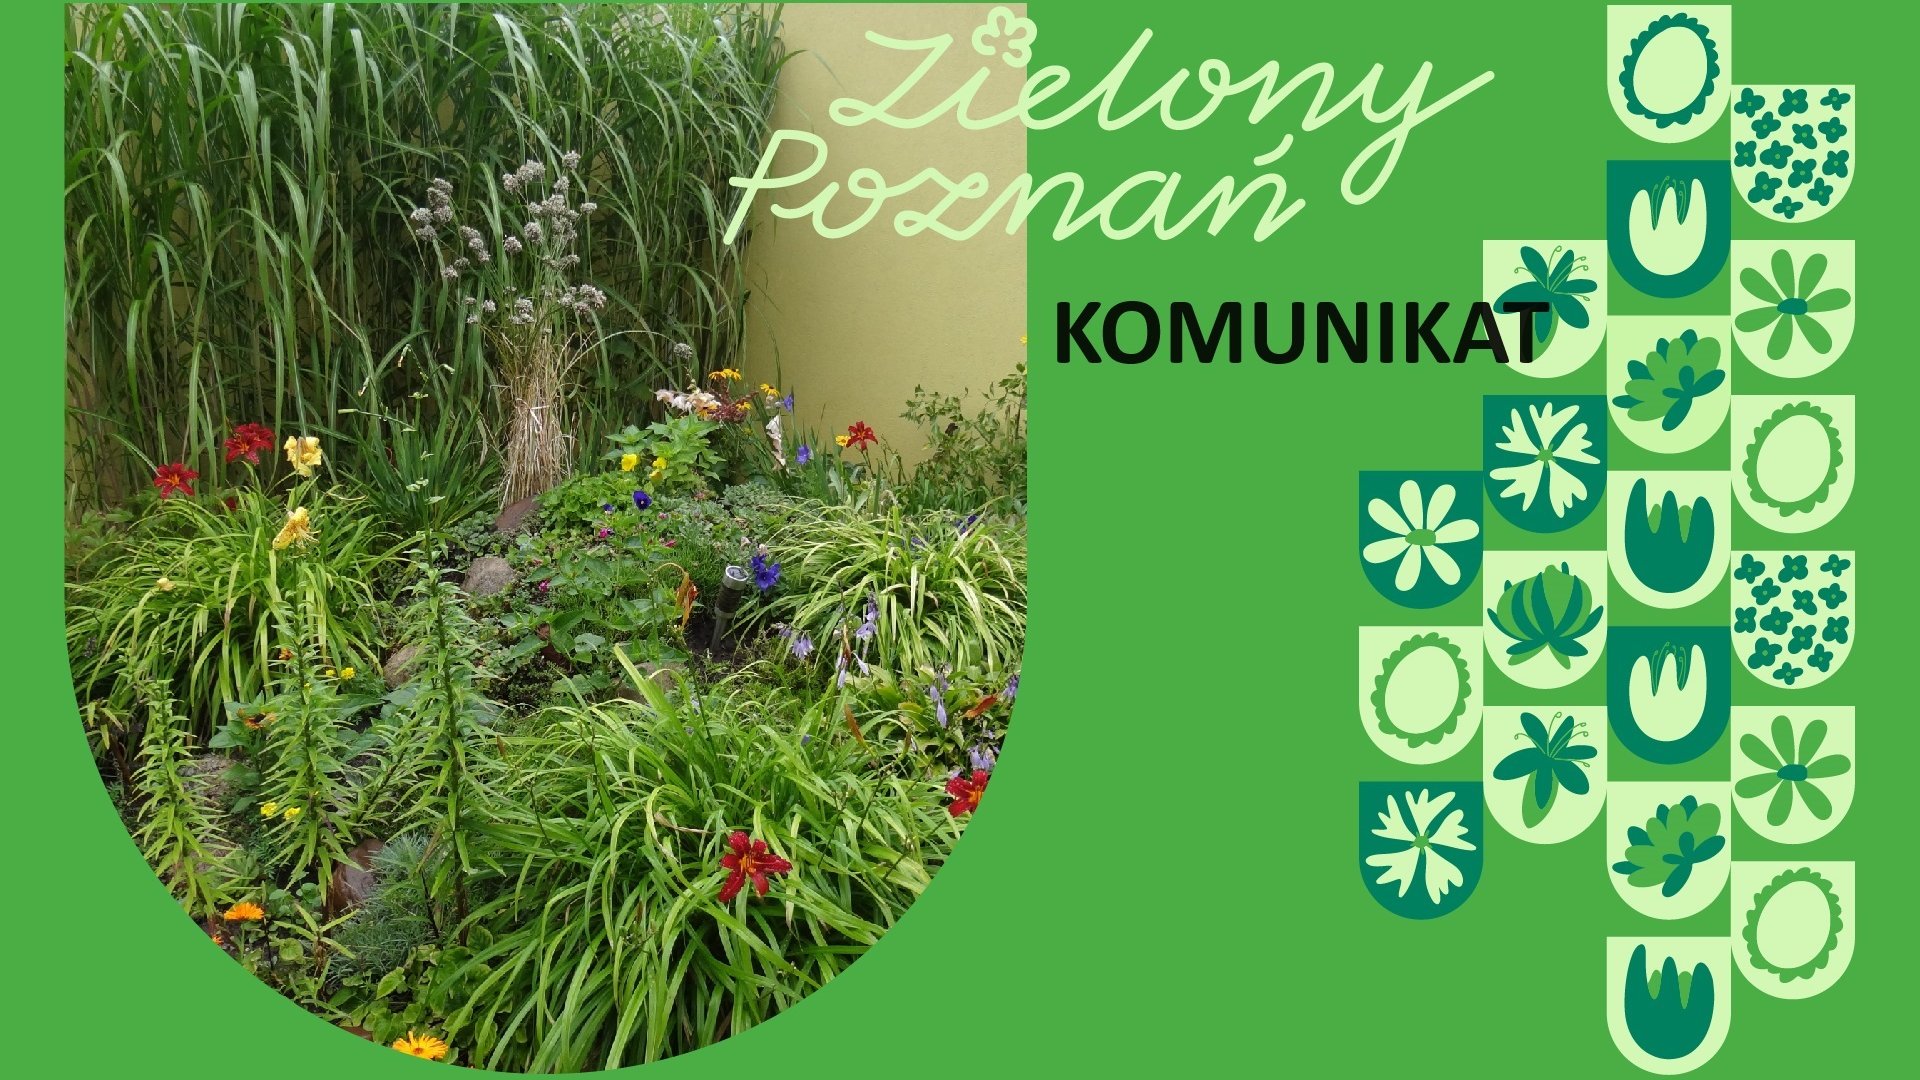 Grafika z napisem Zielony Poznań komunikat, po lewej stronie zdjęcie przedstawiające roślinność, w tym kwiaty, po prawej grafiki różnych rodzajów kwiatów